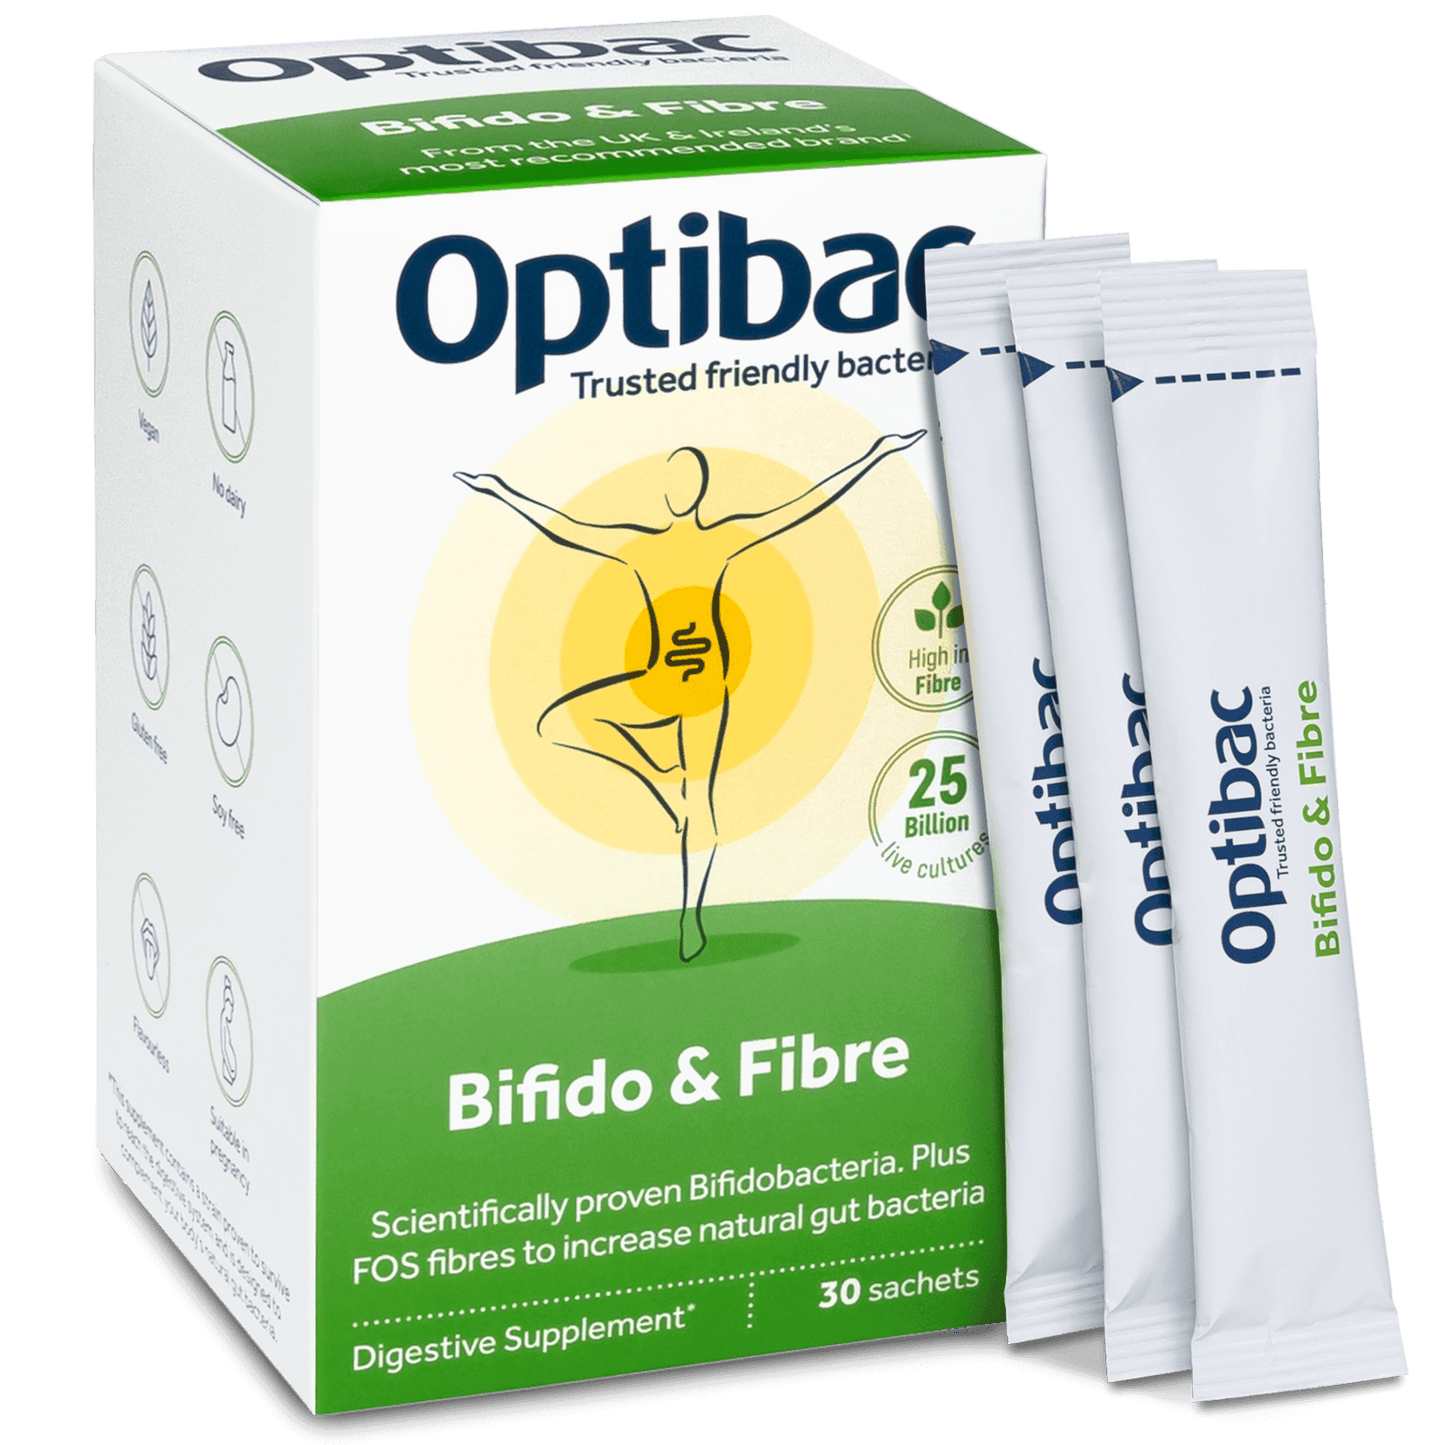 Optibac Probiotic Bifidobacteria & Fibre